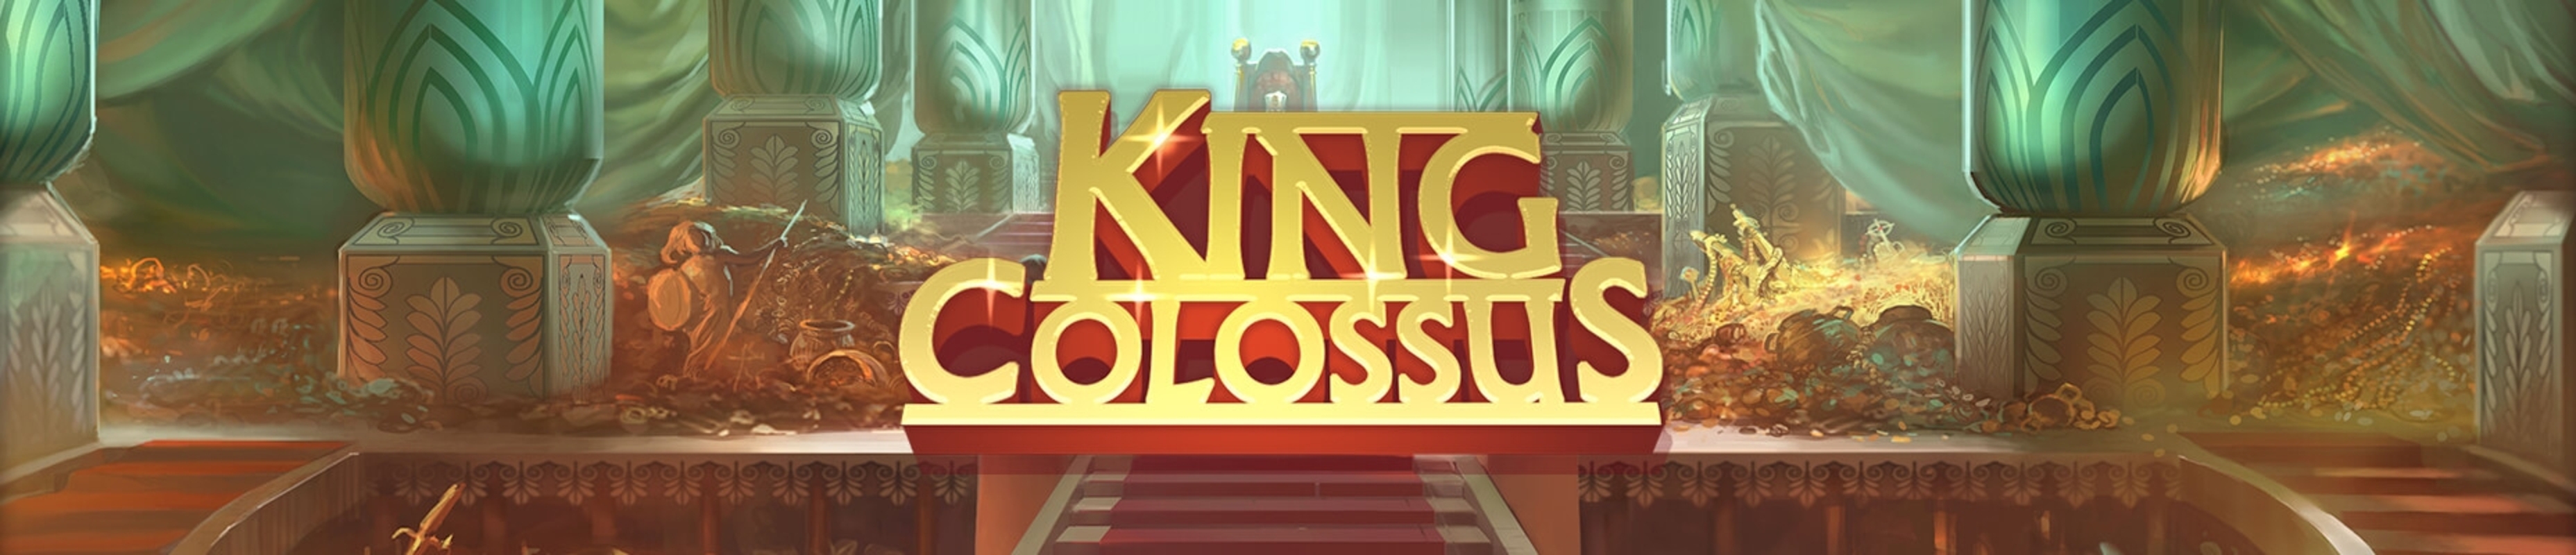 King Colossus demo